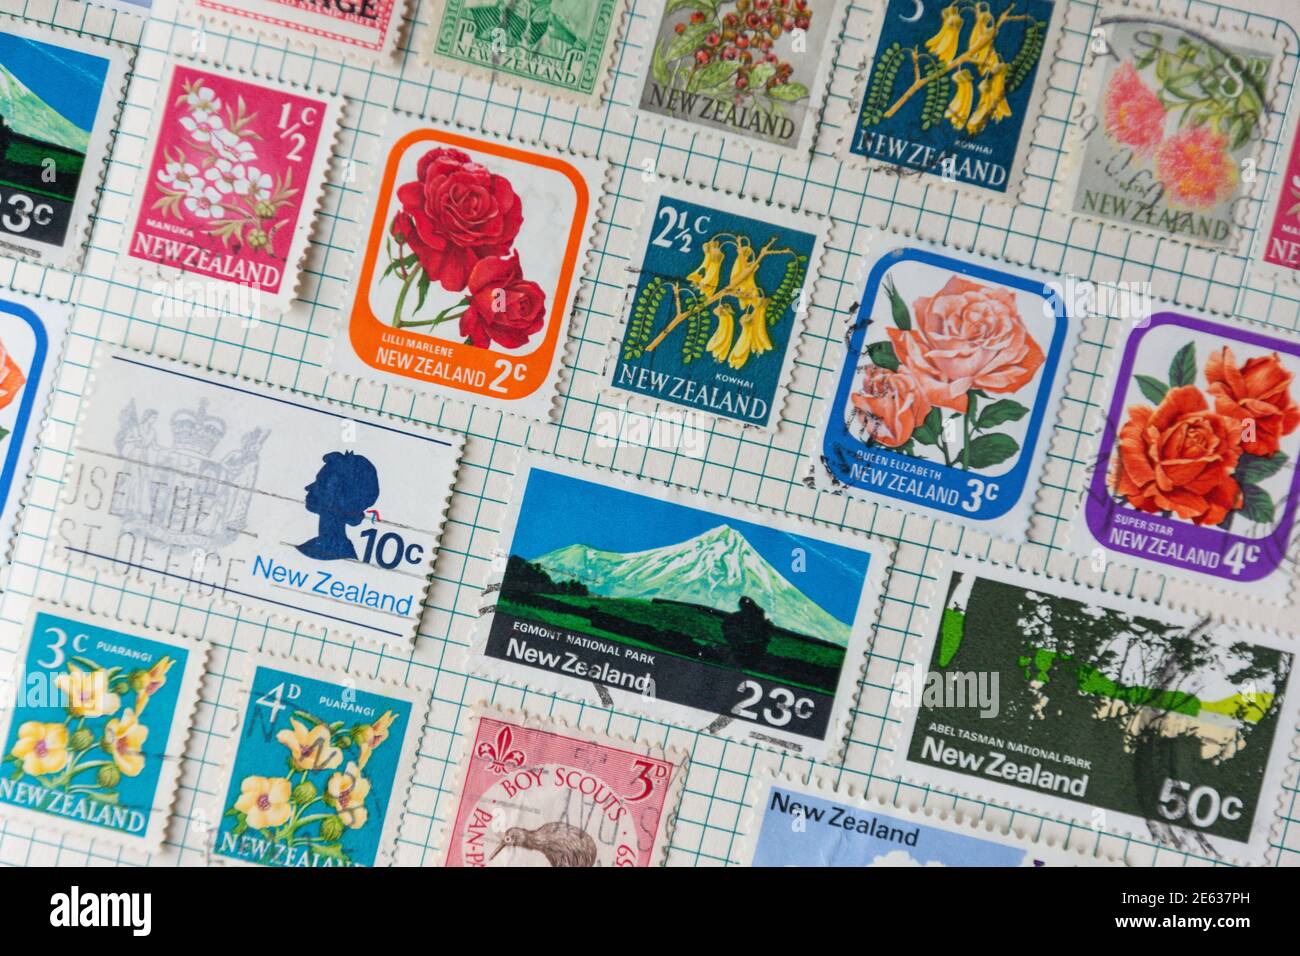 Collection de timbres de la Nouvelle-Zélande en album, Grand Londres, Angleterre, Royaume-Uni Banque D'Images